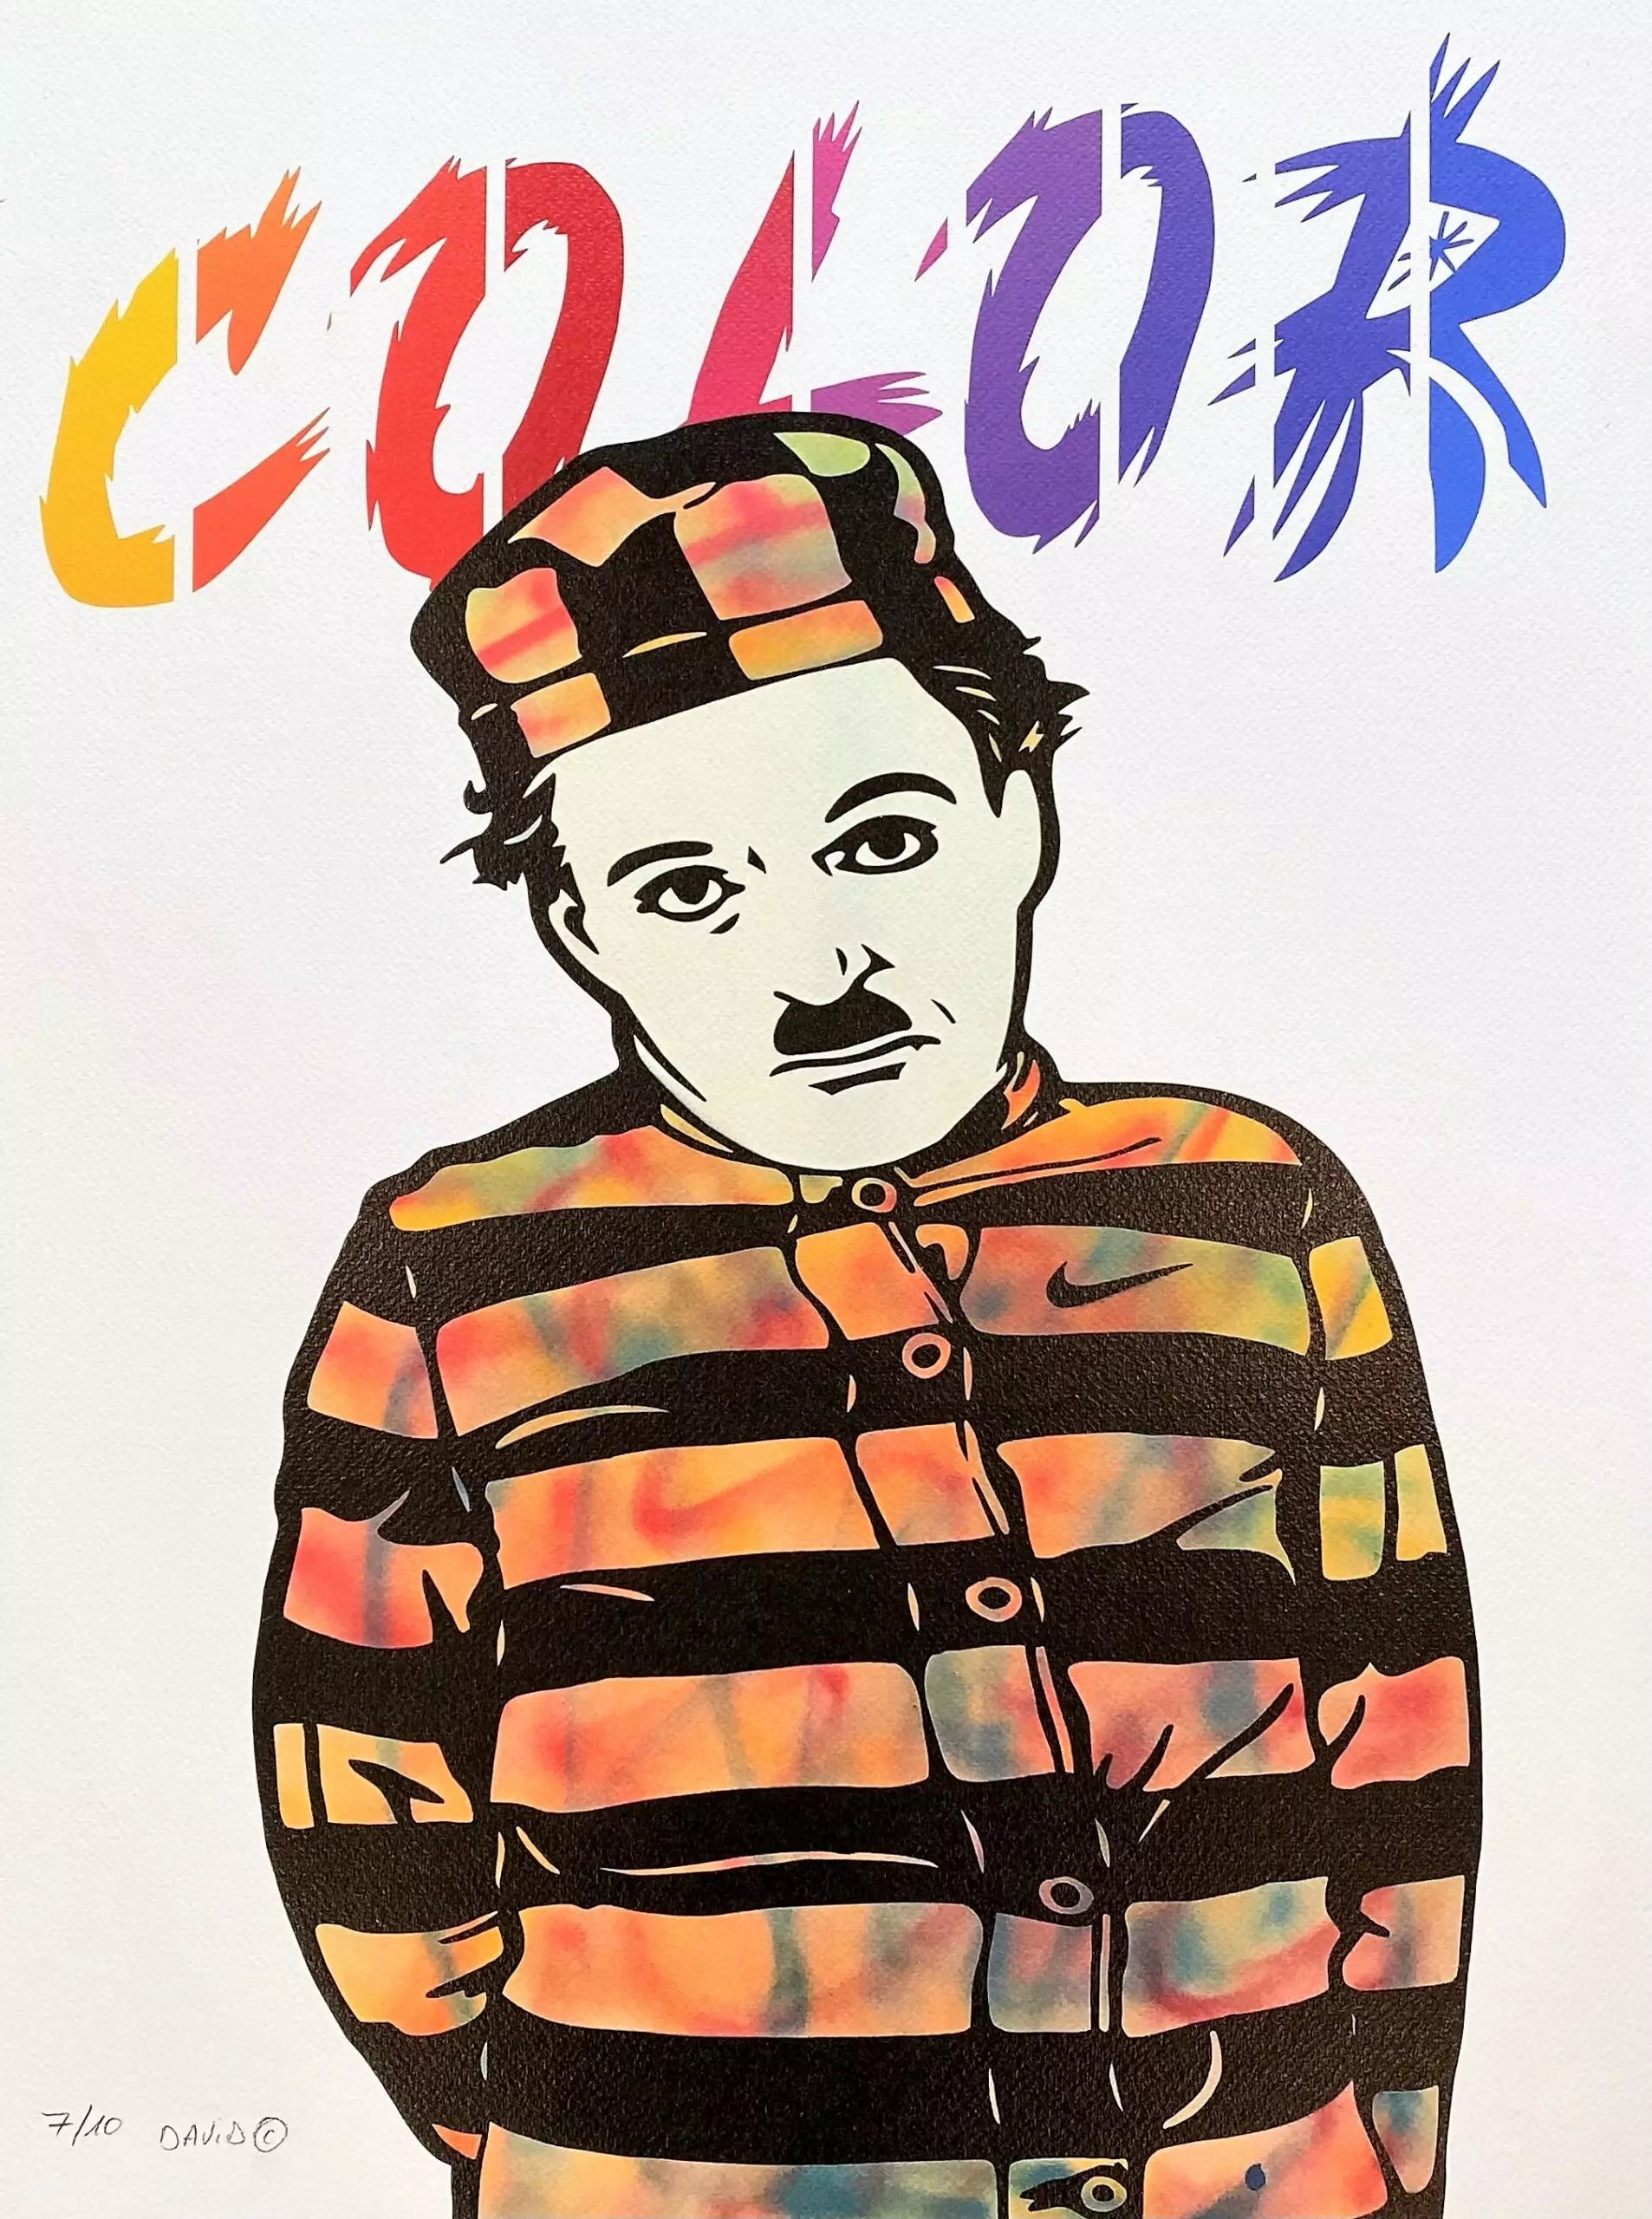 Charlie Color di David Karsenty. Stampa giclée stampa su carta200 gsm edizione limitata rappresentante l'iconico personaggio Charlie Chaplin raffigurato in maniera divertente dall'artista | CD Studio d'Arte